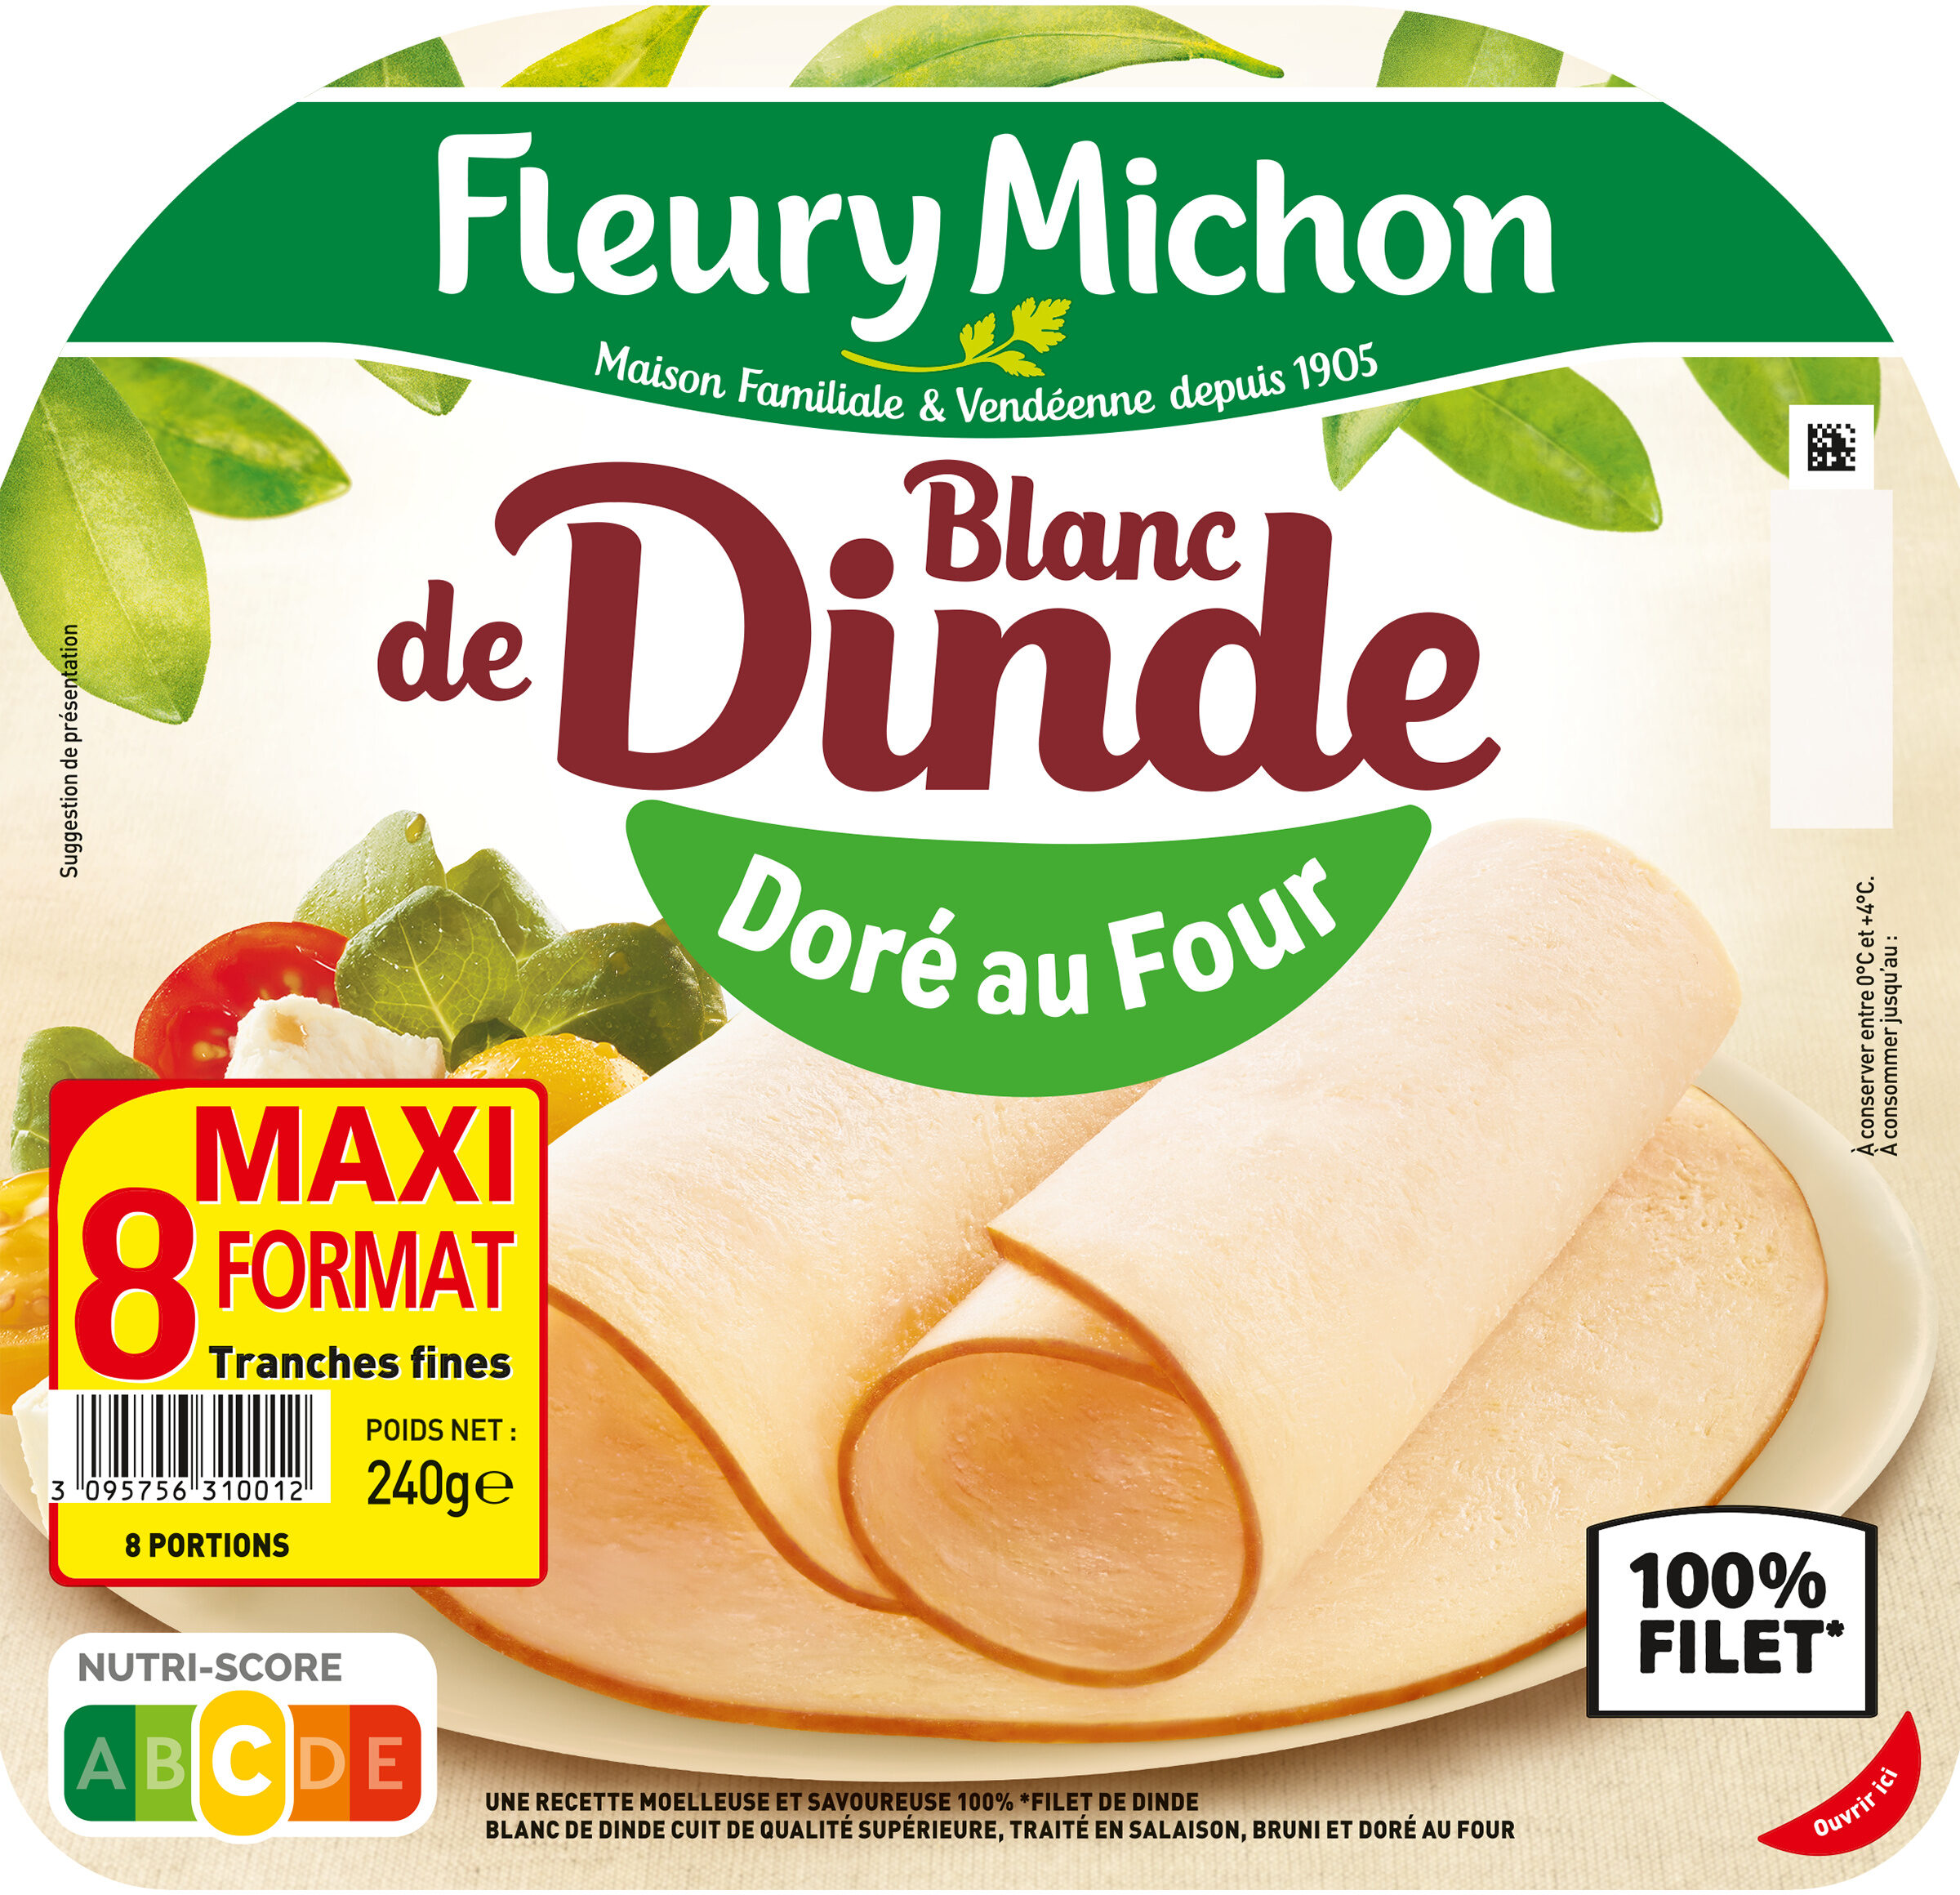 Blanc de Dinde - Doré au Four - Produkt - fr